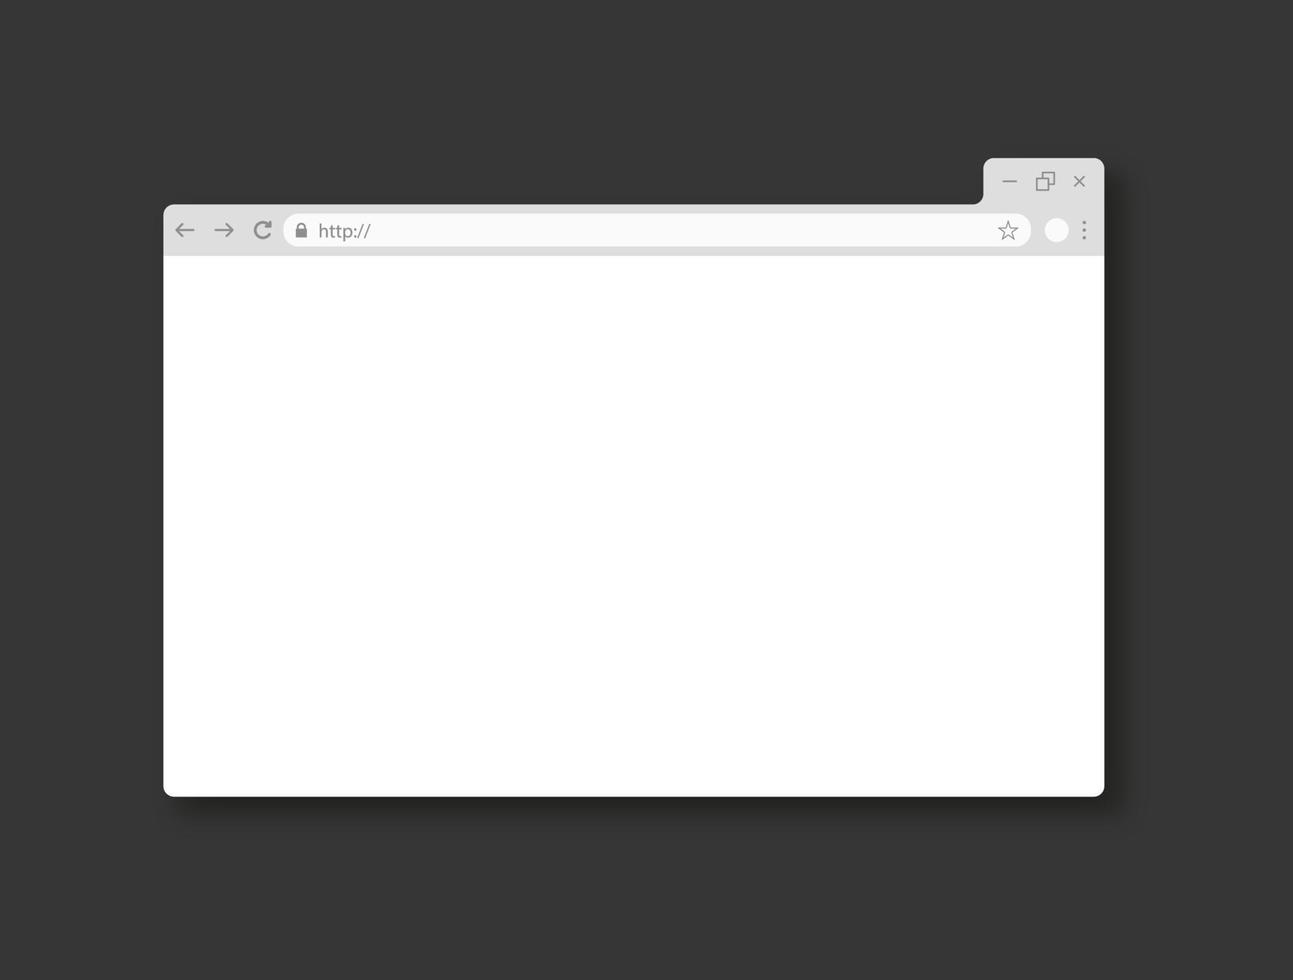 realistische vorlage des internetbrowserfensters. leere Browserseite. weißes modell der website-seite. Vektor